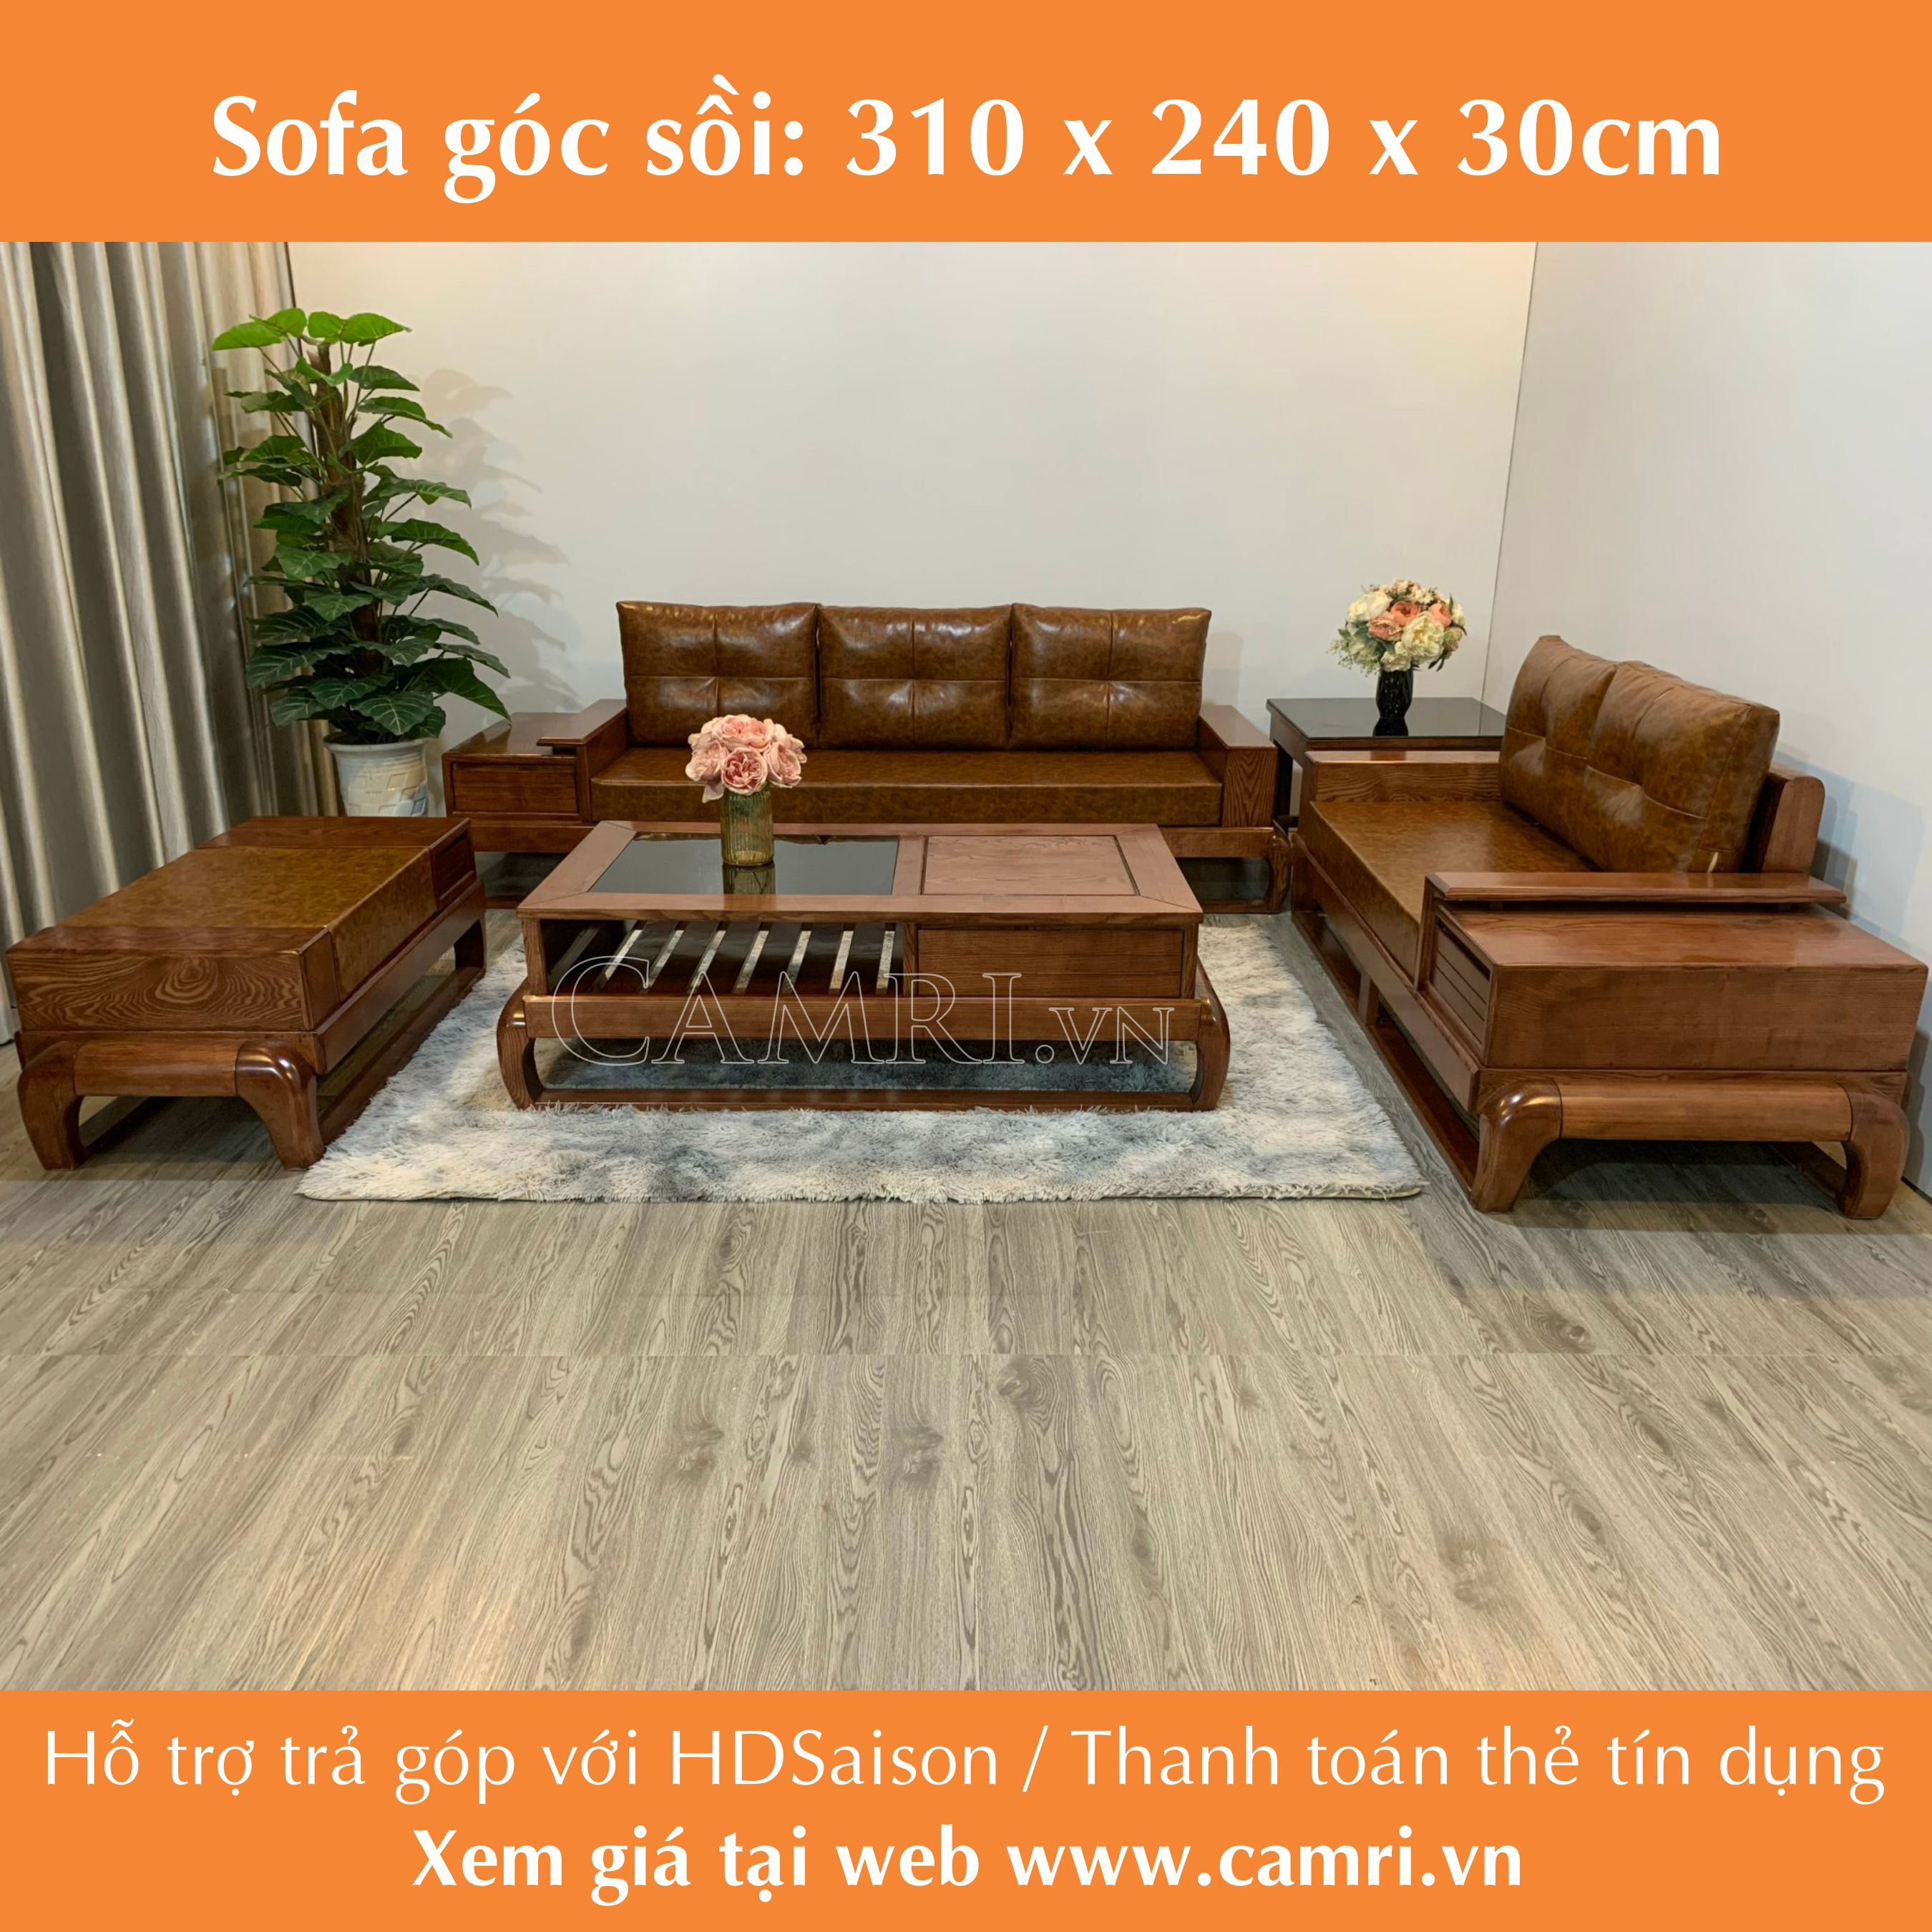 Sofa gỗ sồi chân to góc lớn https://camri.vn/ sẽ mang đến cho bạn một không gian phòng khách sang trọng và tinh tế. Với chất liệu gỗ sồi tự nhiên, sản phẩm cho ra sắc màu độc đáo và khác biệt. Năm 2024, sản phẩm được cập nhật với những kiểu dáng mới đa dạng và phong phú, giúp bạn có thêm sự lựa chọn và đa dạng hơn trong việc trang trí căn phòng của mình.